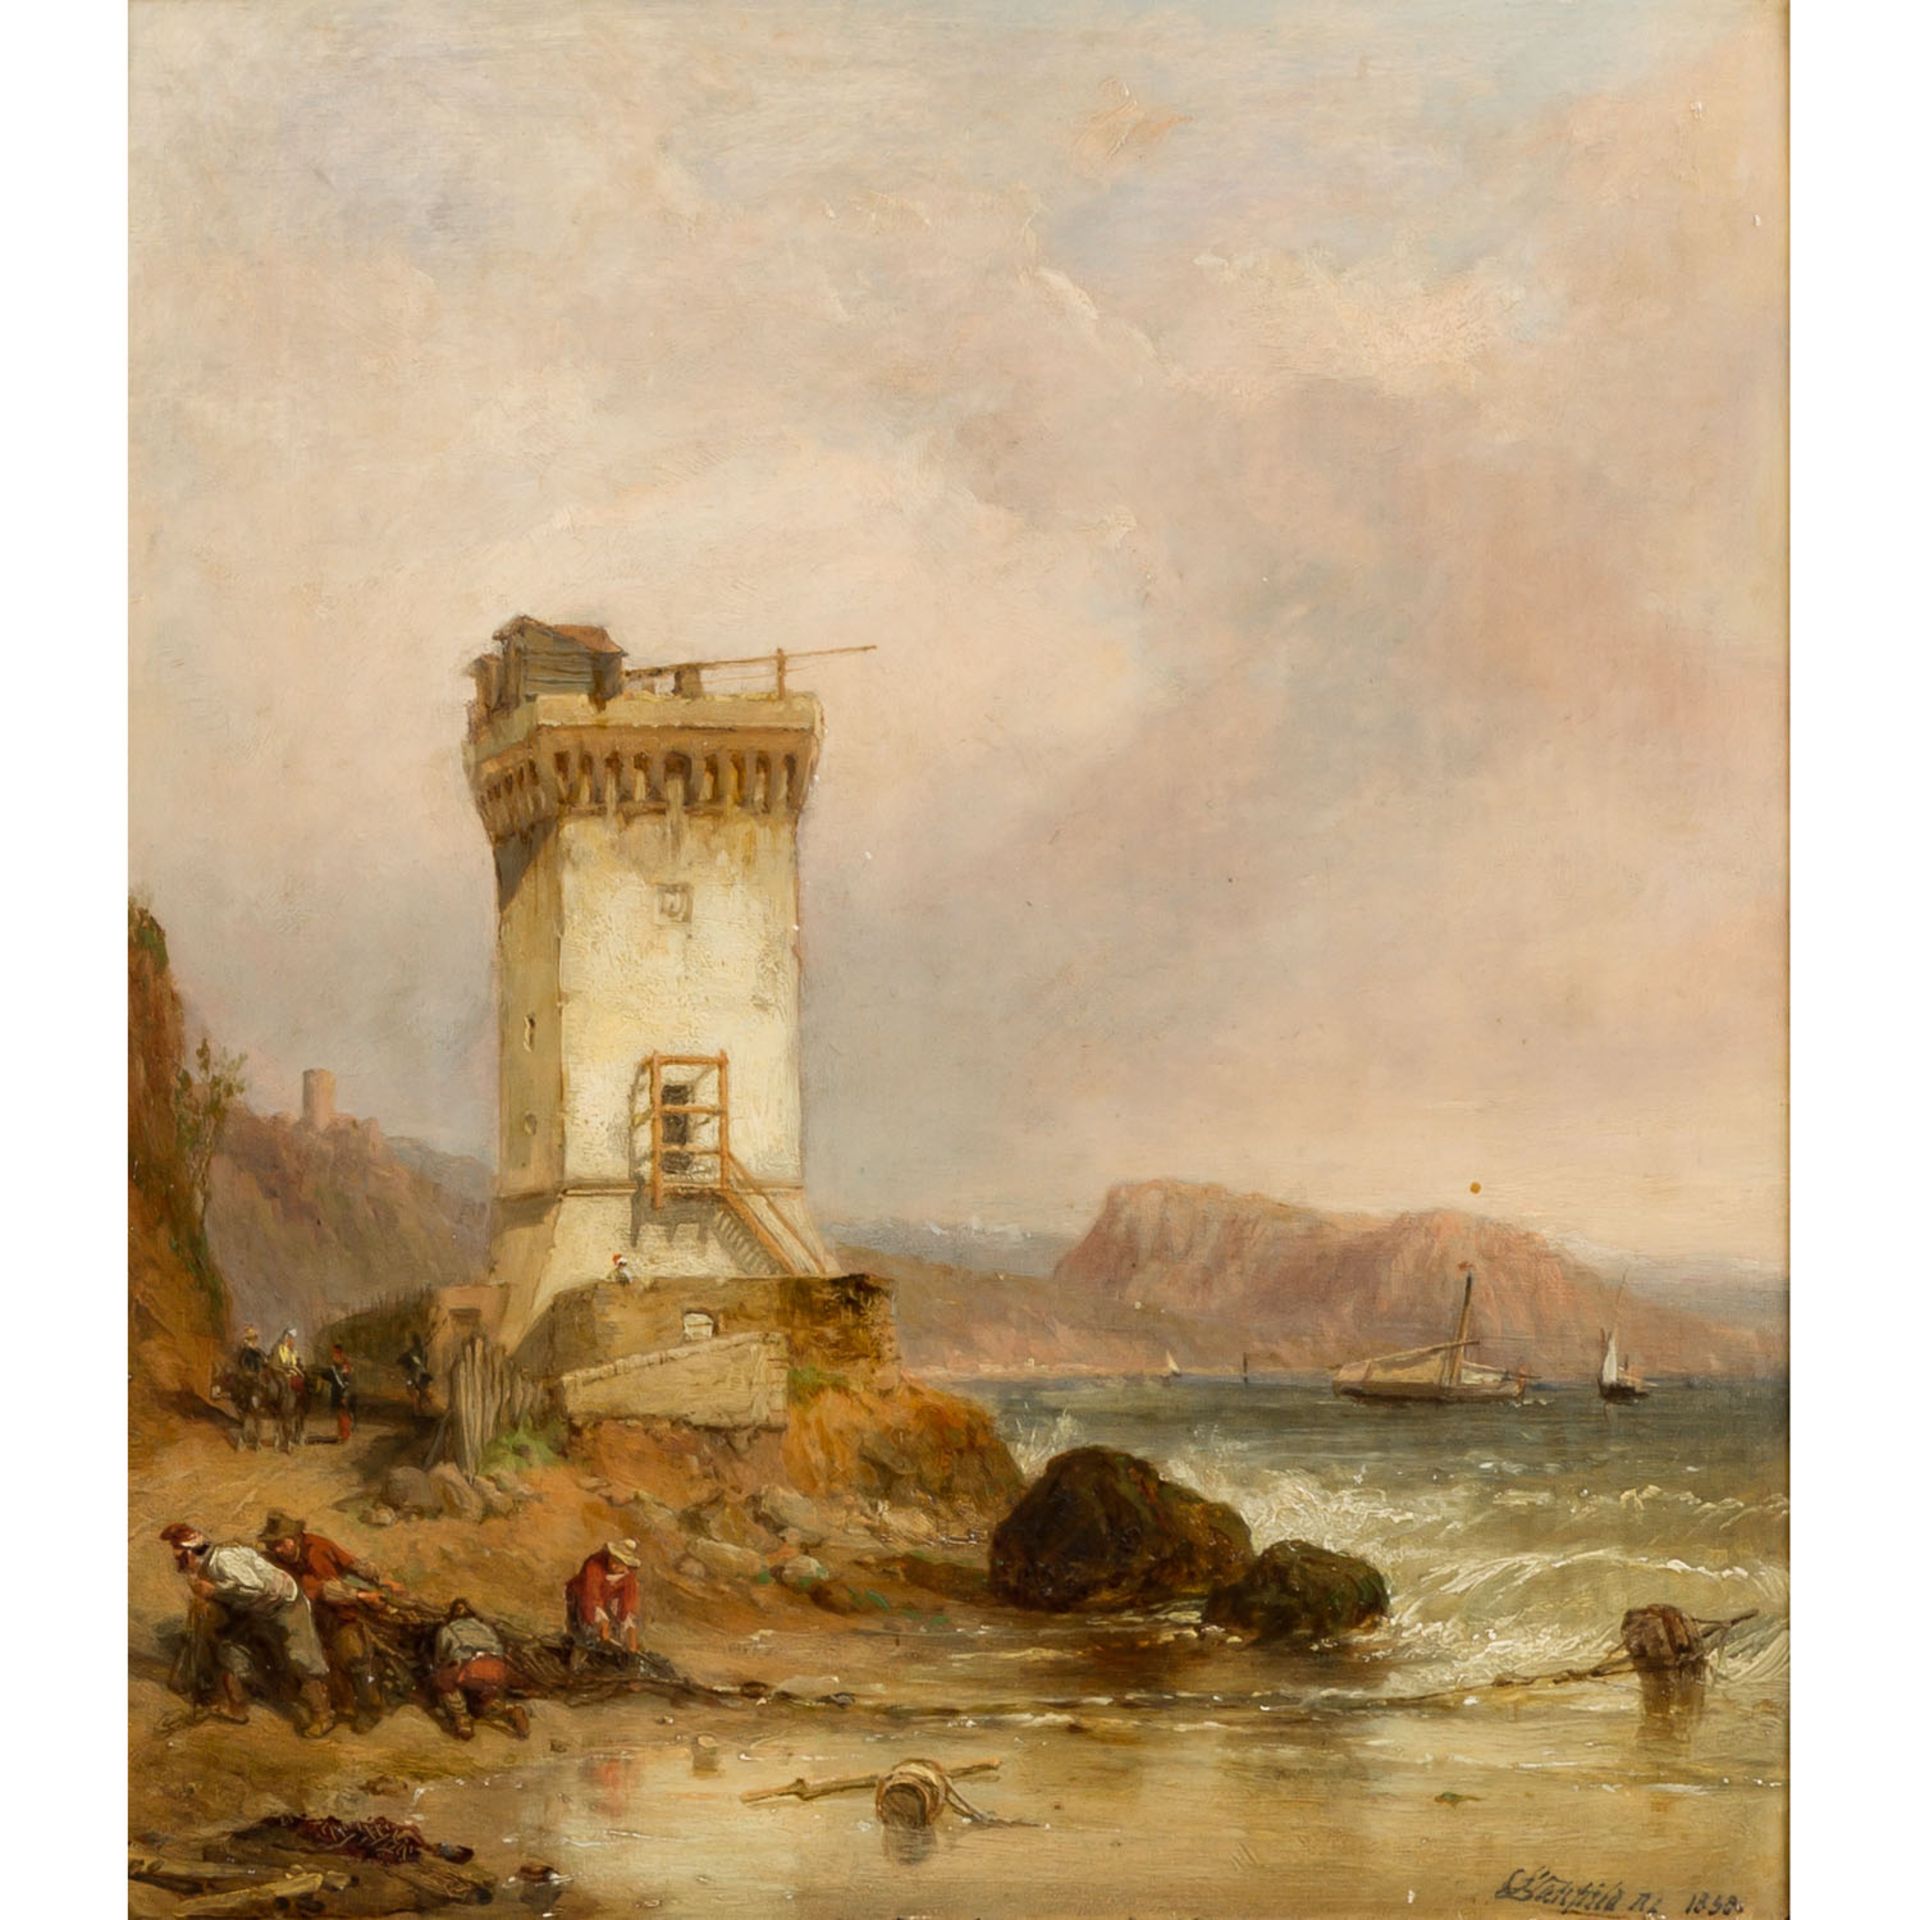 STANFIELD, WILLIAM CLARKSON (1793-1867), "Brittische Küste mit Ford und Wehrturm", im Vordergrund